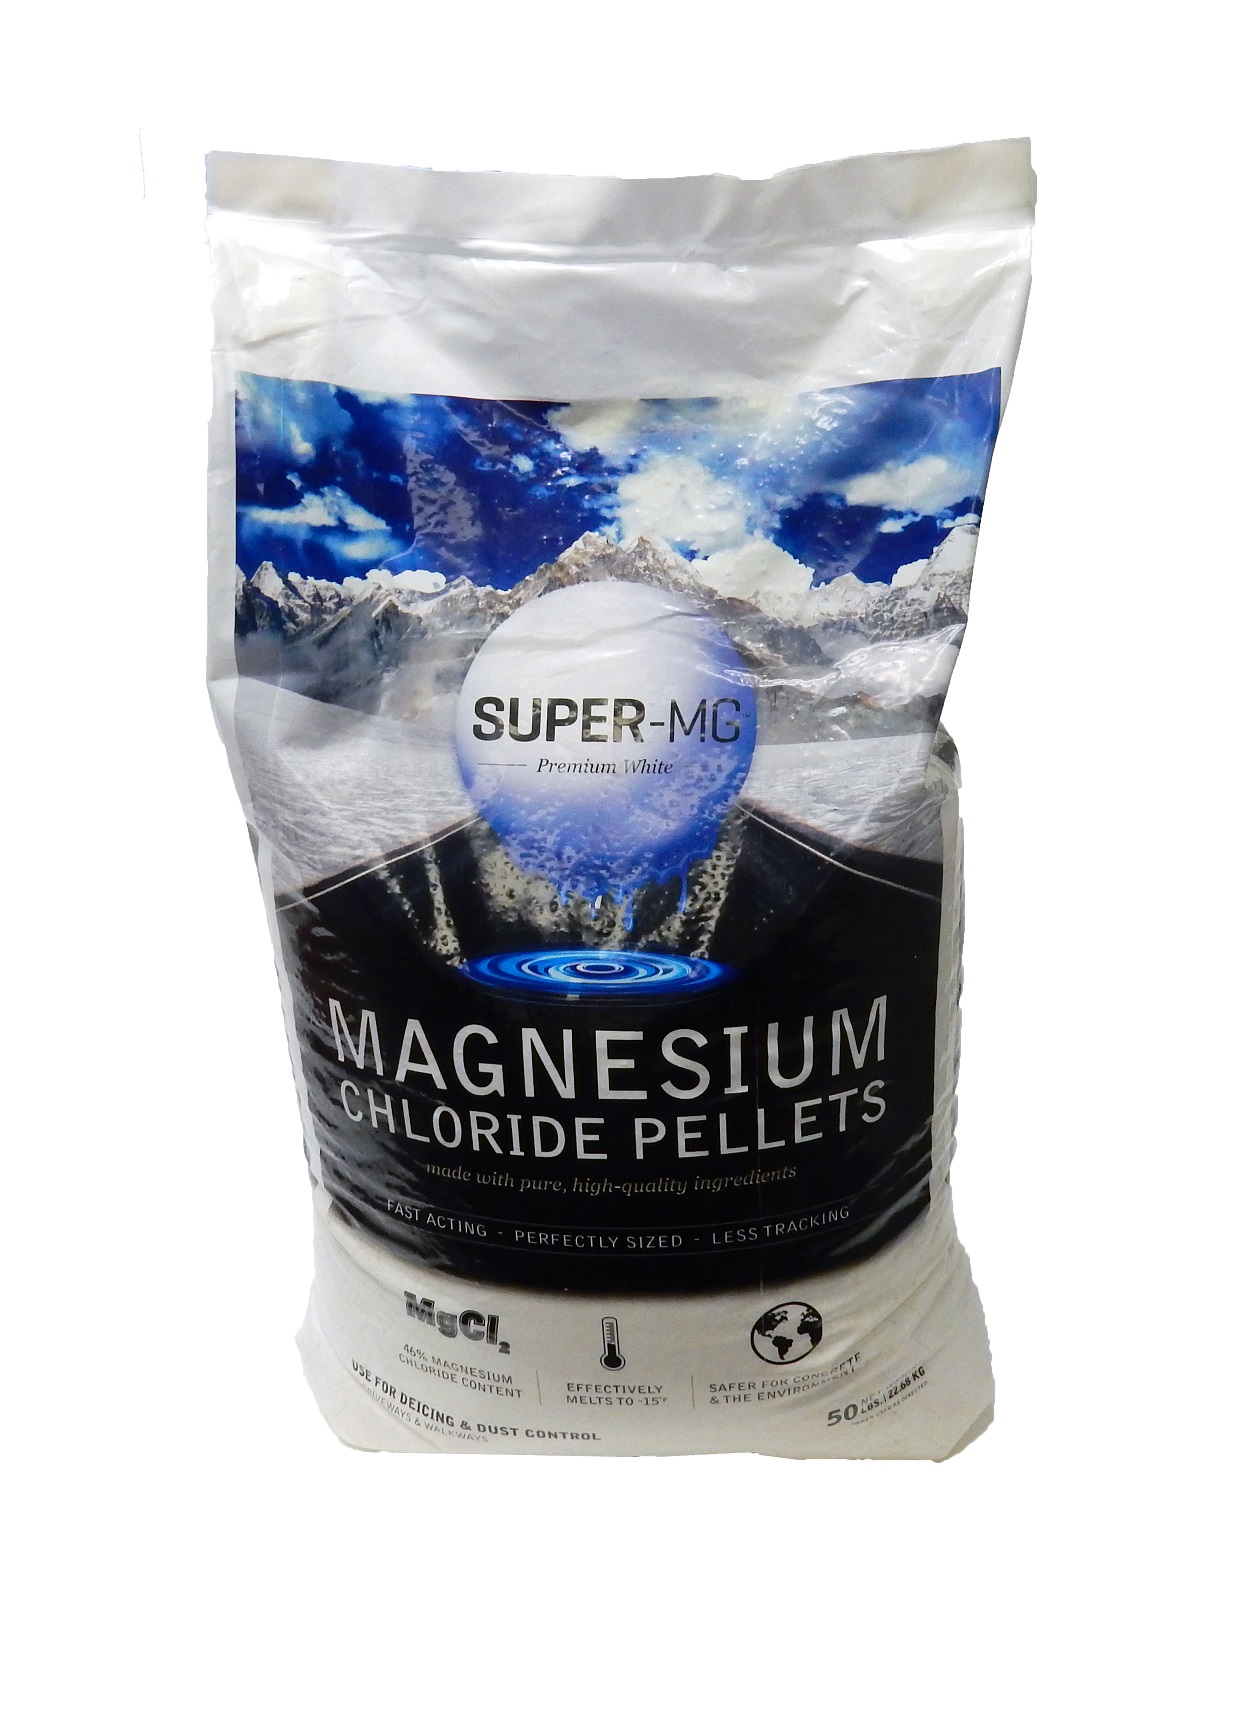 Magnesium Chloride Pellets 50 lb Bag - Blended Ice Melter